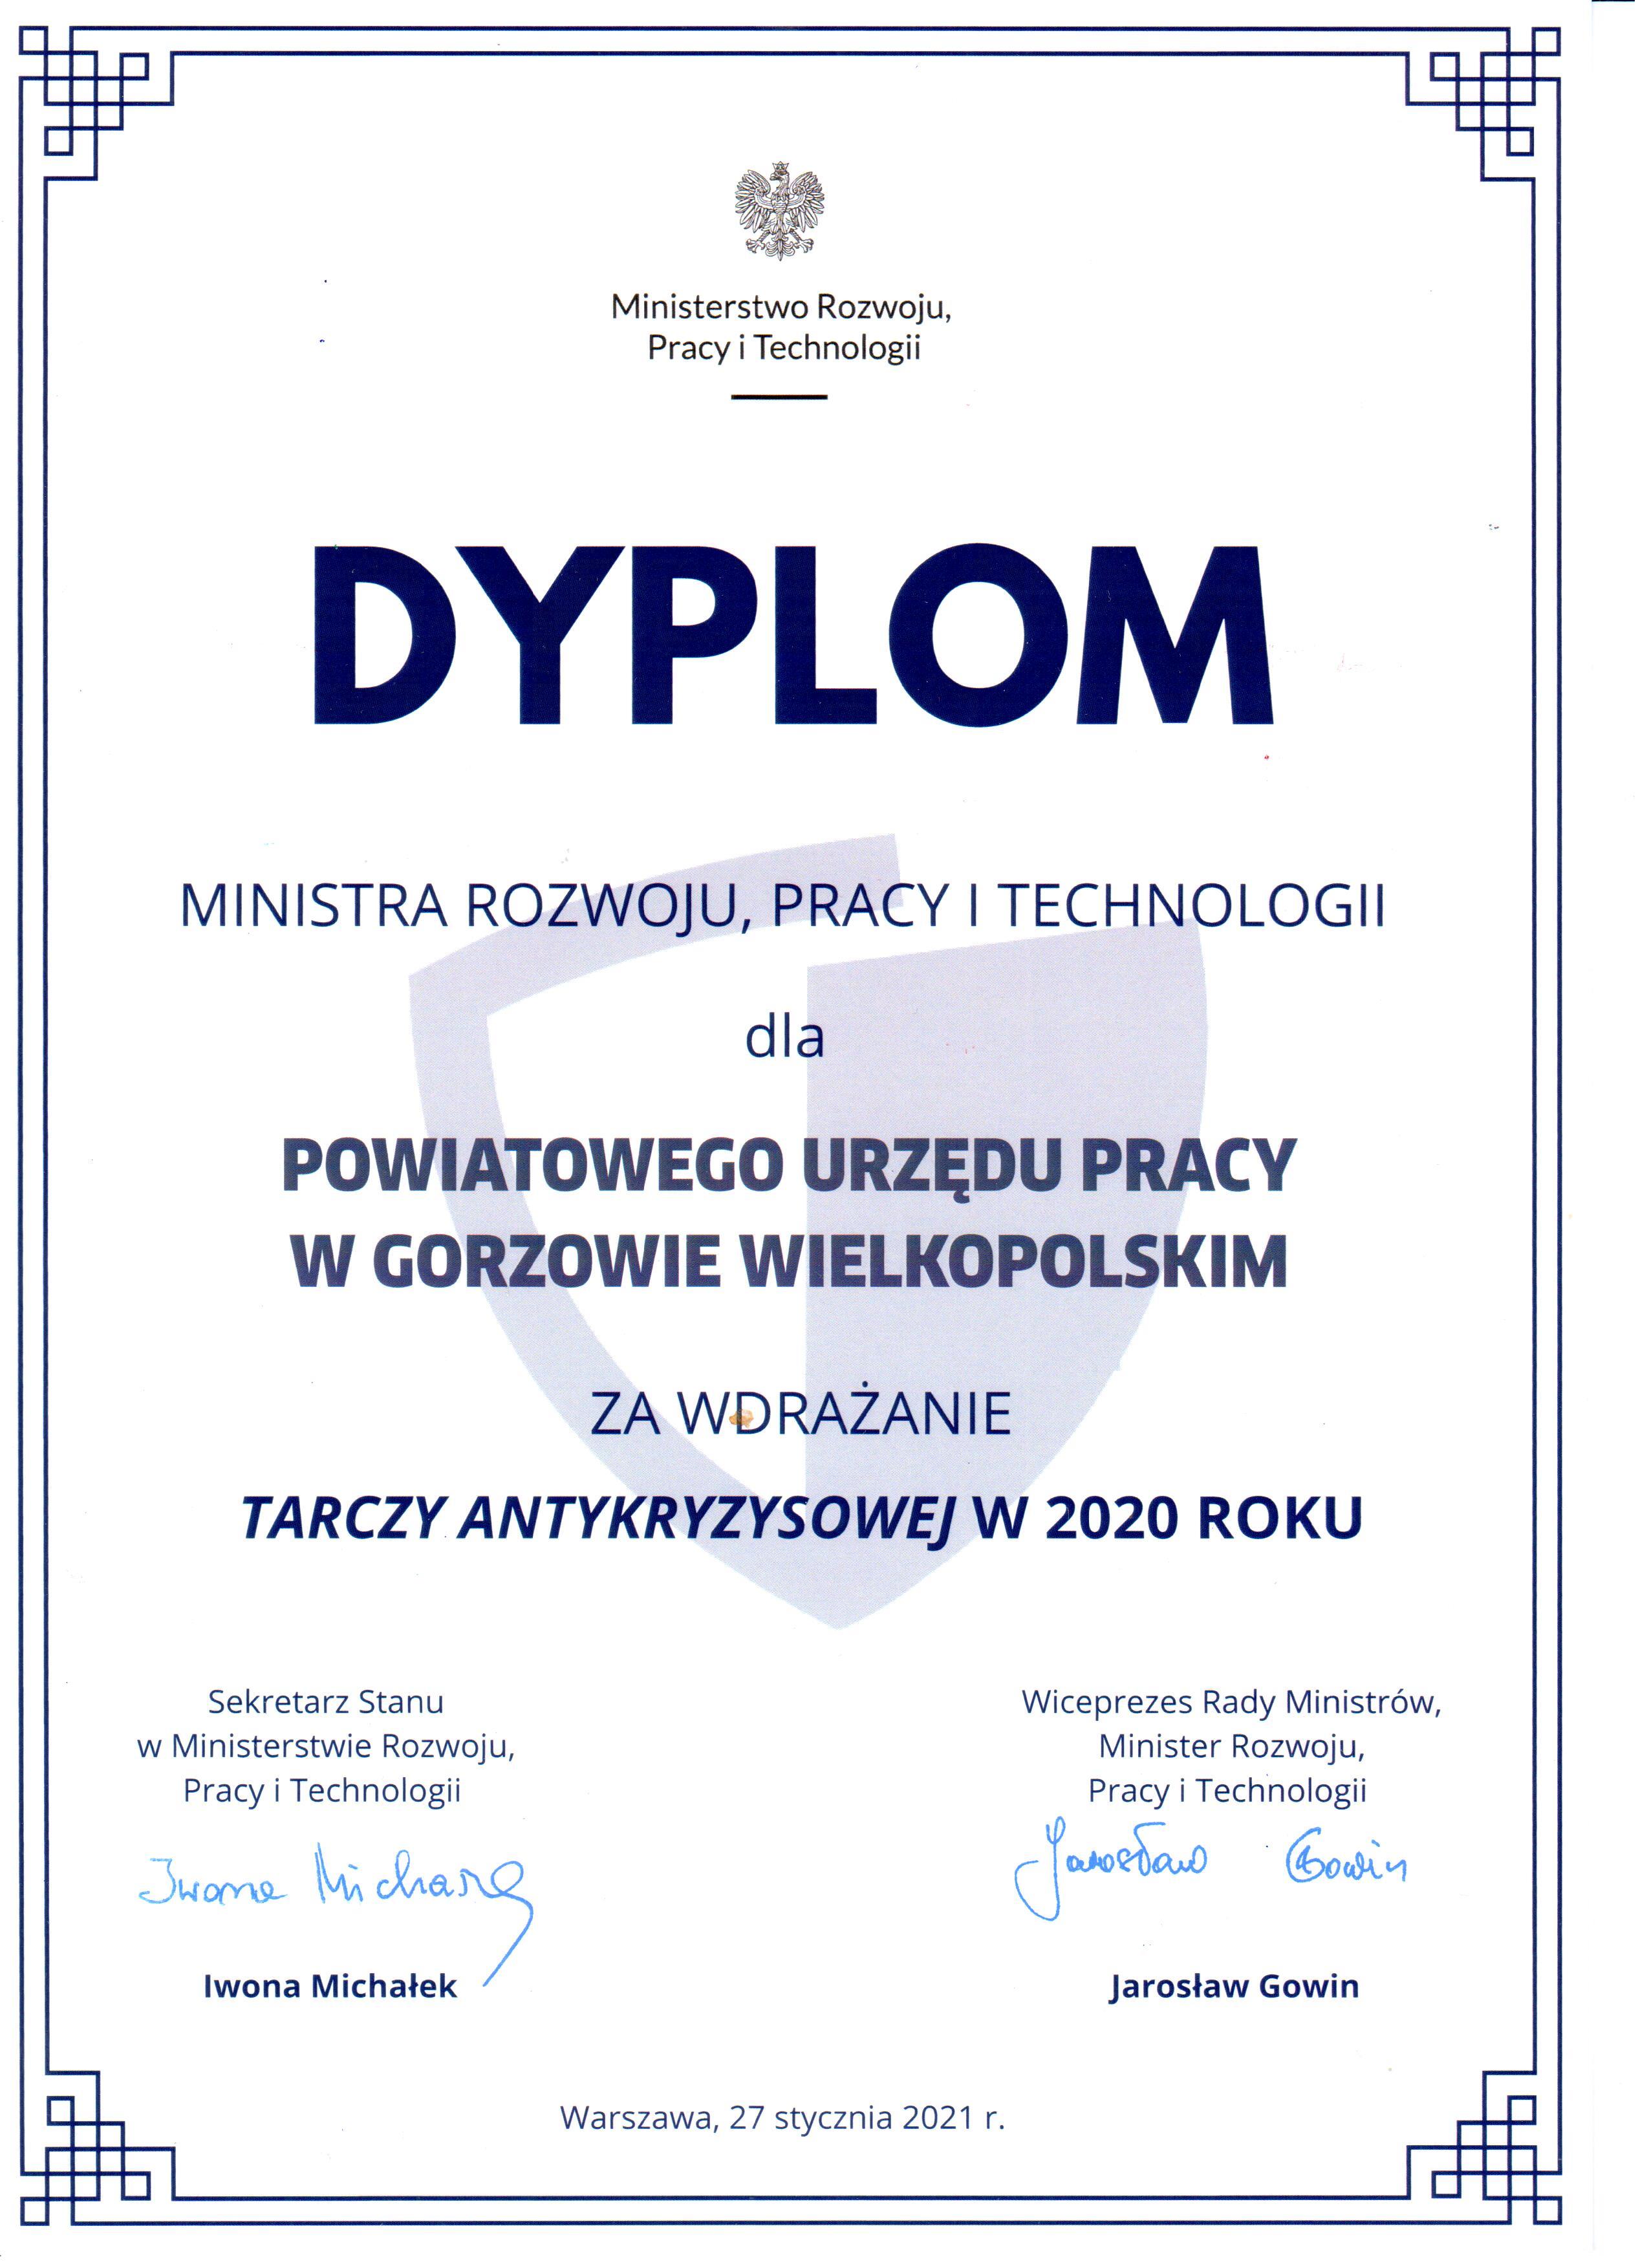 Dyplom Ministra Rozwoju, Pracy i Technologii dla Powiatowego Urzędu Pracy w Gorzowie Wielkopolskim. za wdrożenie tarczy antykryzysowej w 2020 roku.